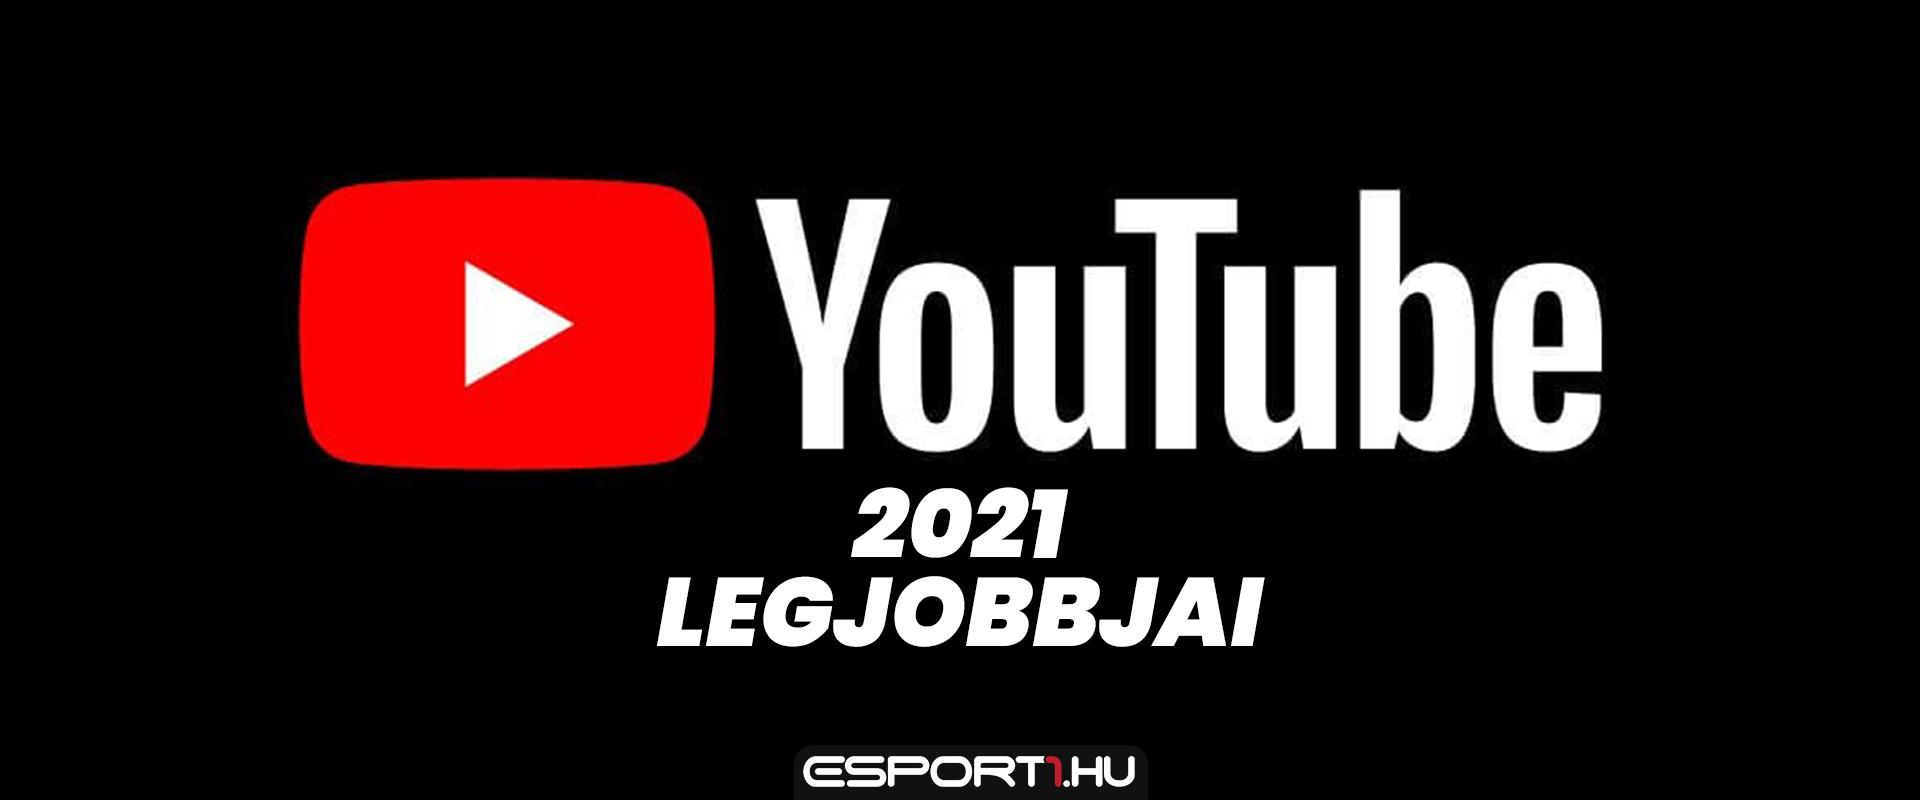 Íme 2021 5 legjobb YouTubere